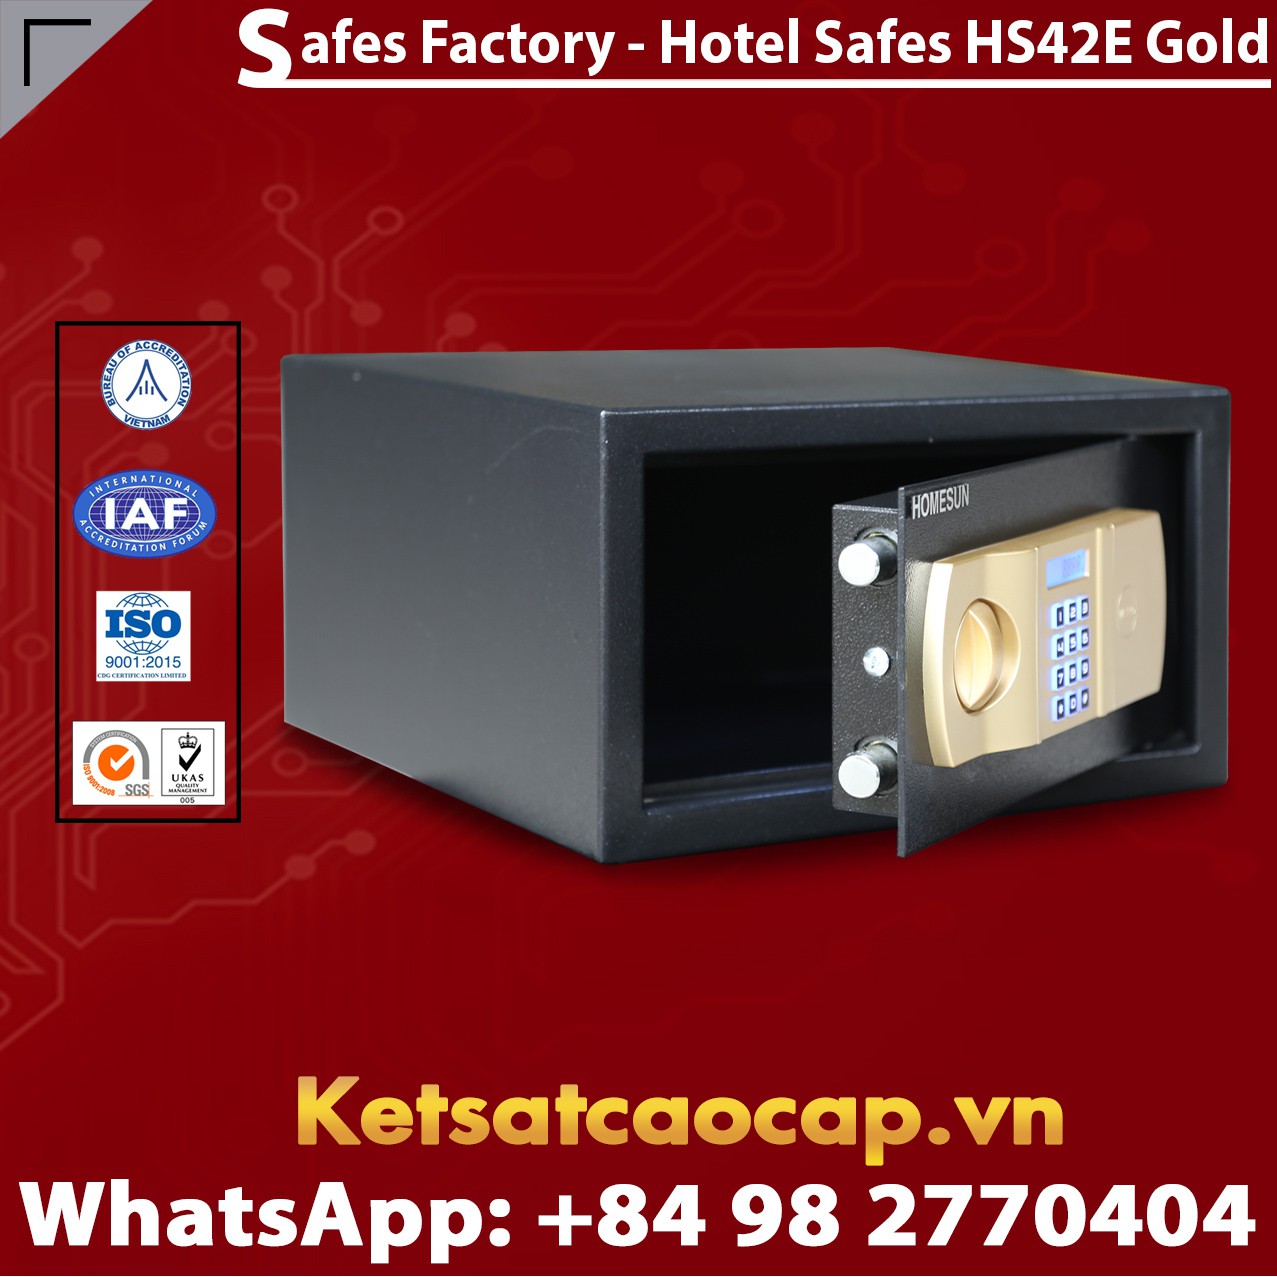 Hotel Room Safe HOMESUN HS42 E Gold